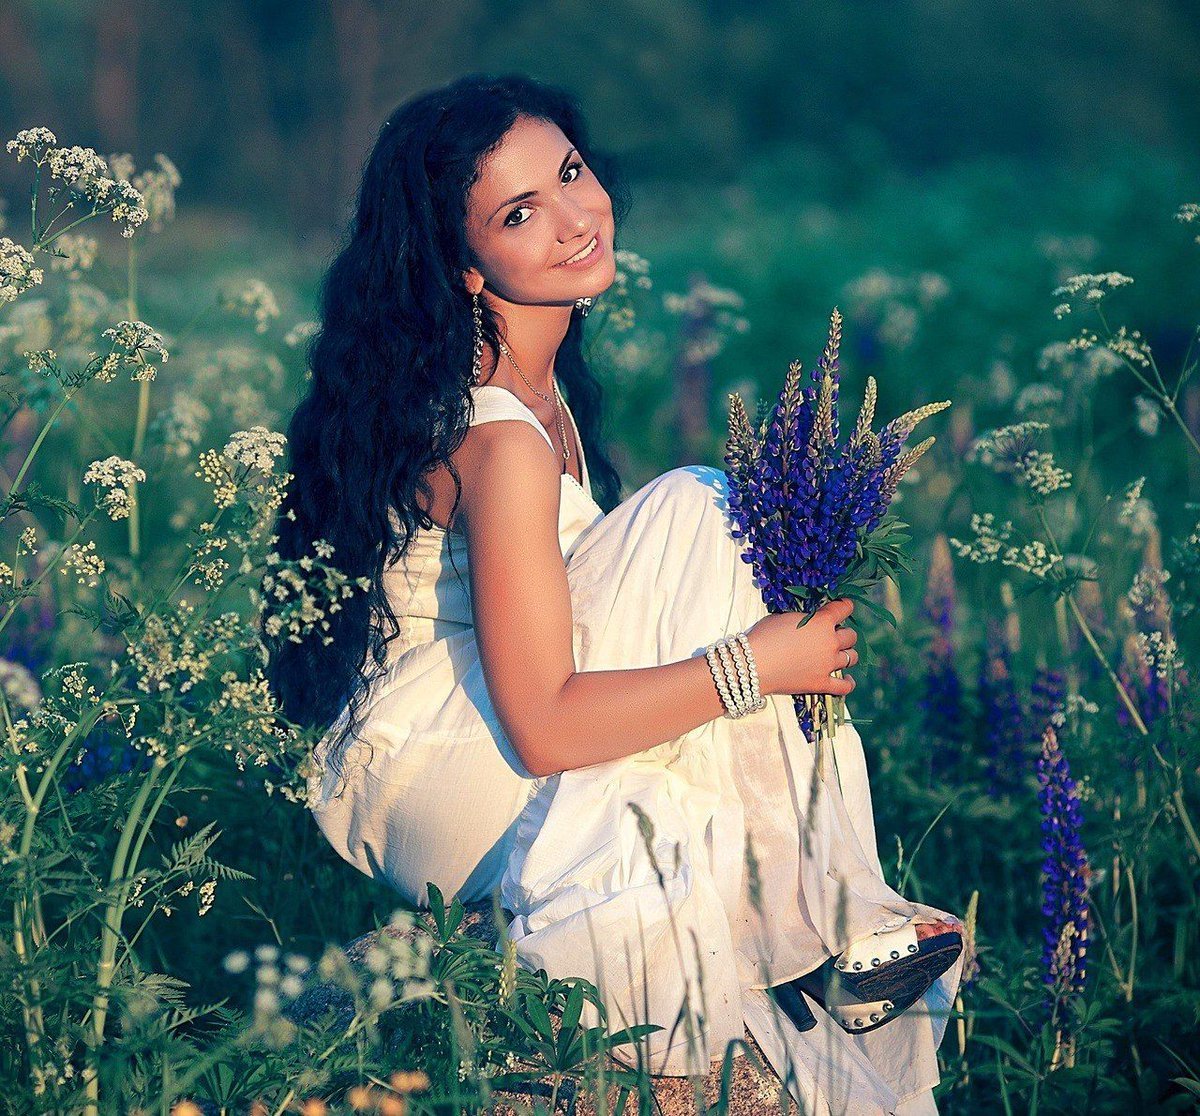 Девушка с полевыми цветами